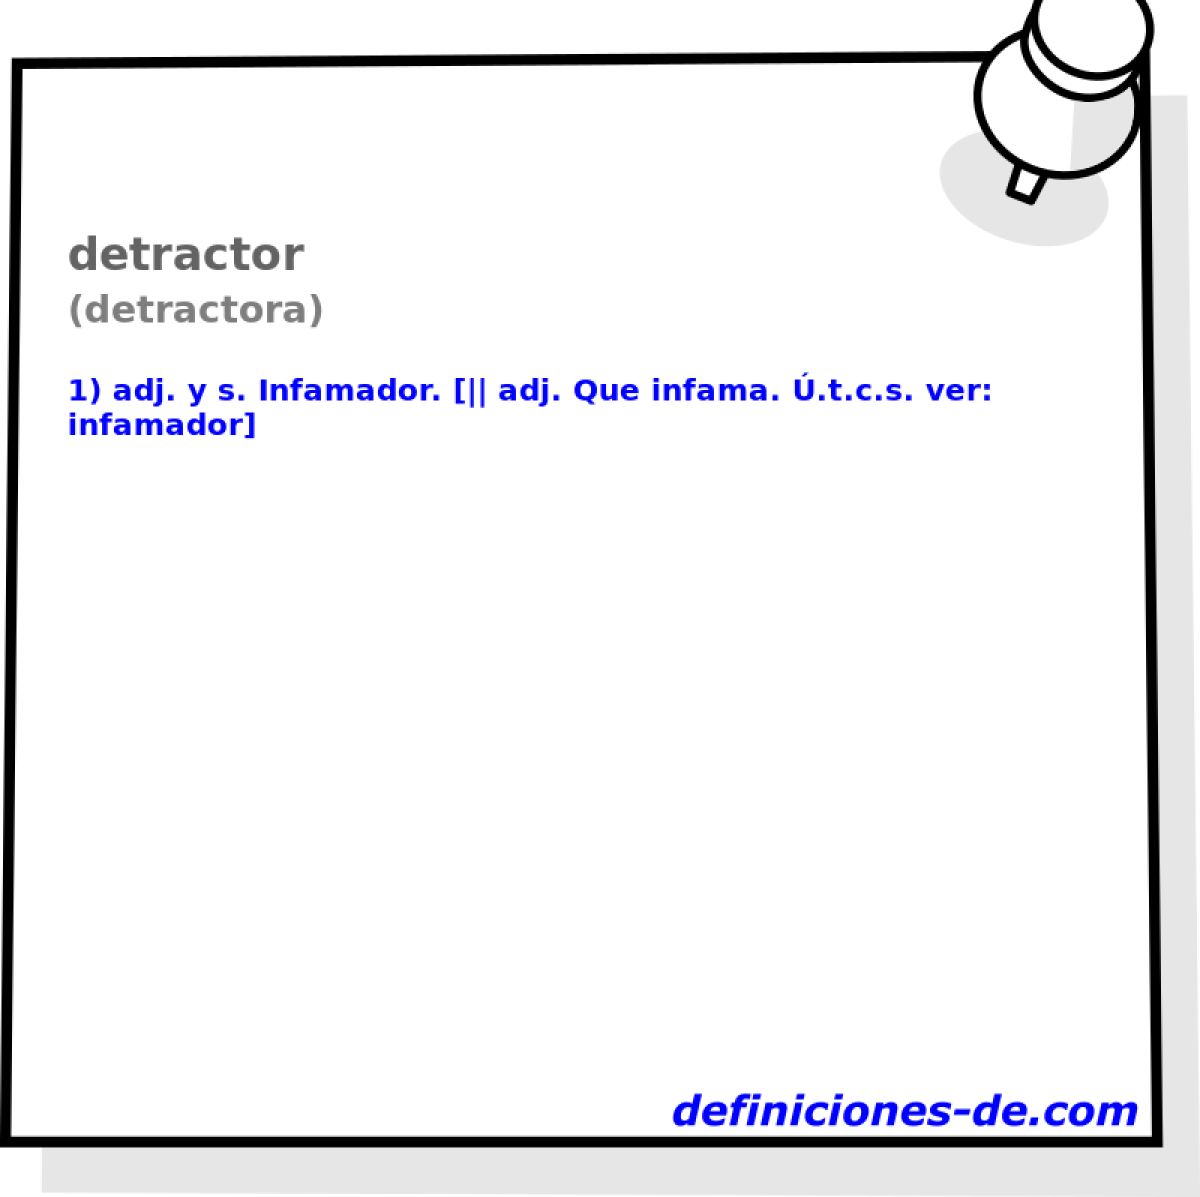 detractor (detractora)